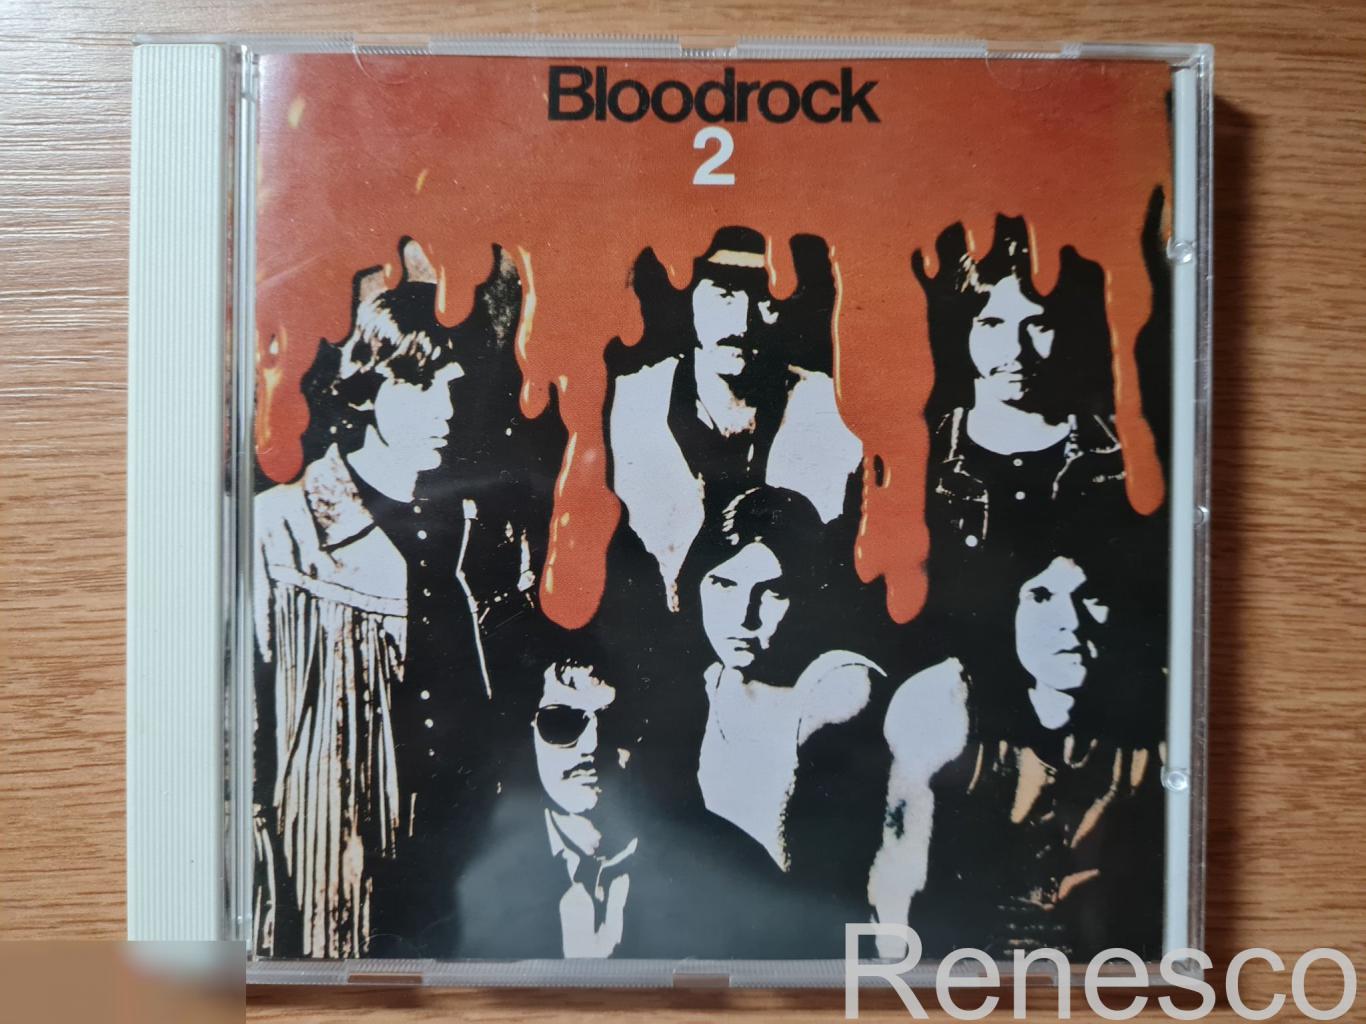 Bloodrock – Bloodrock 2 (Germany) (1995) (Reissue)